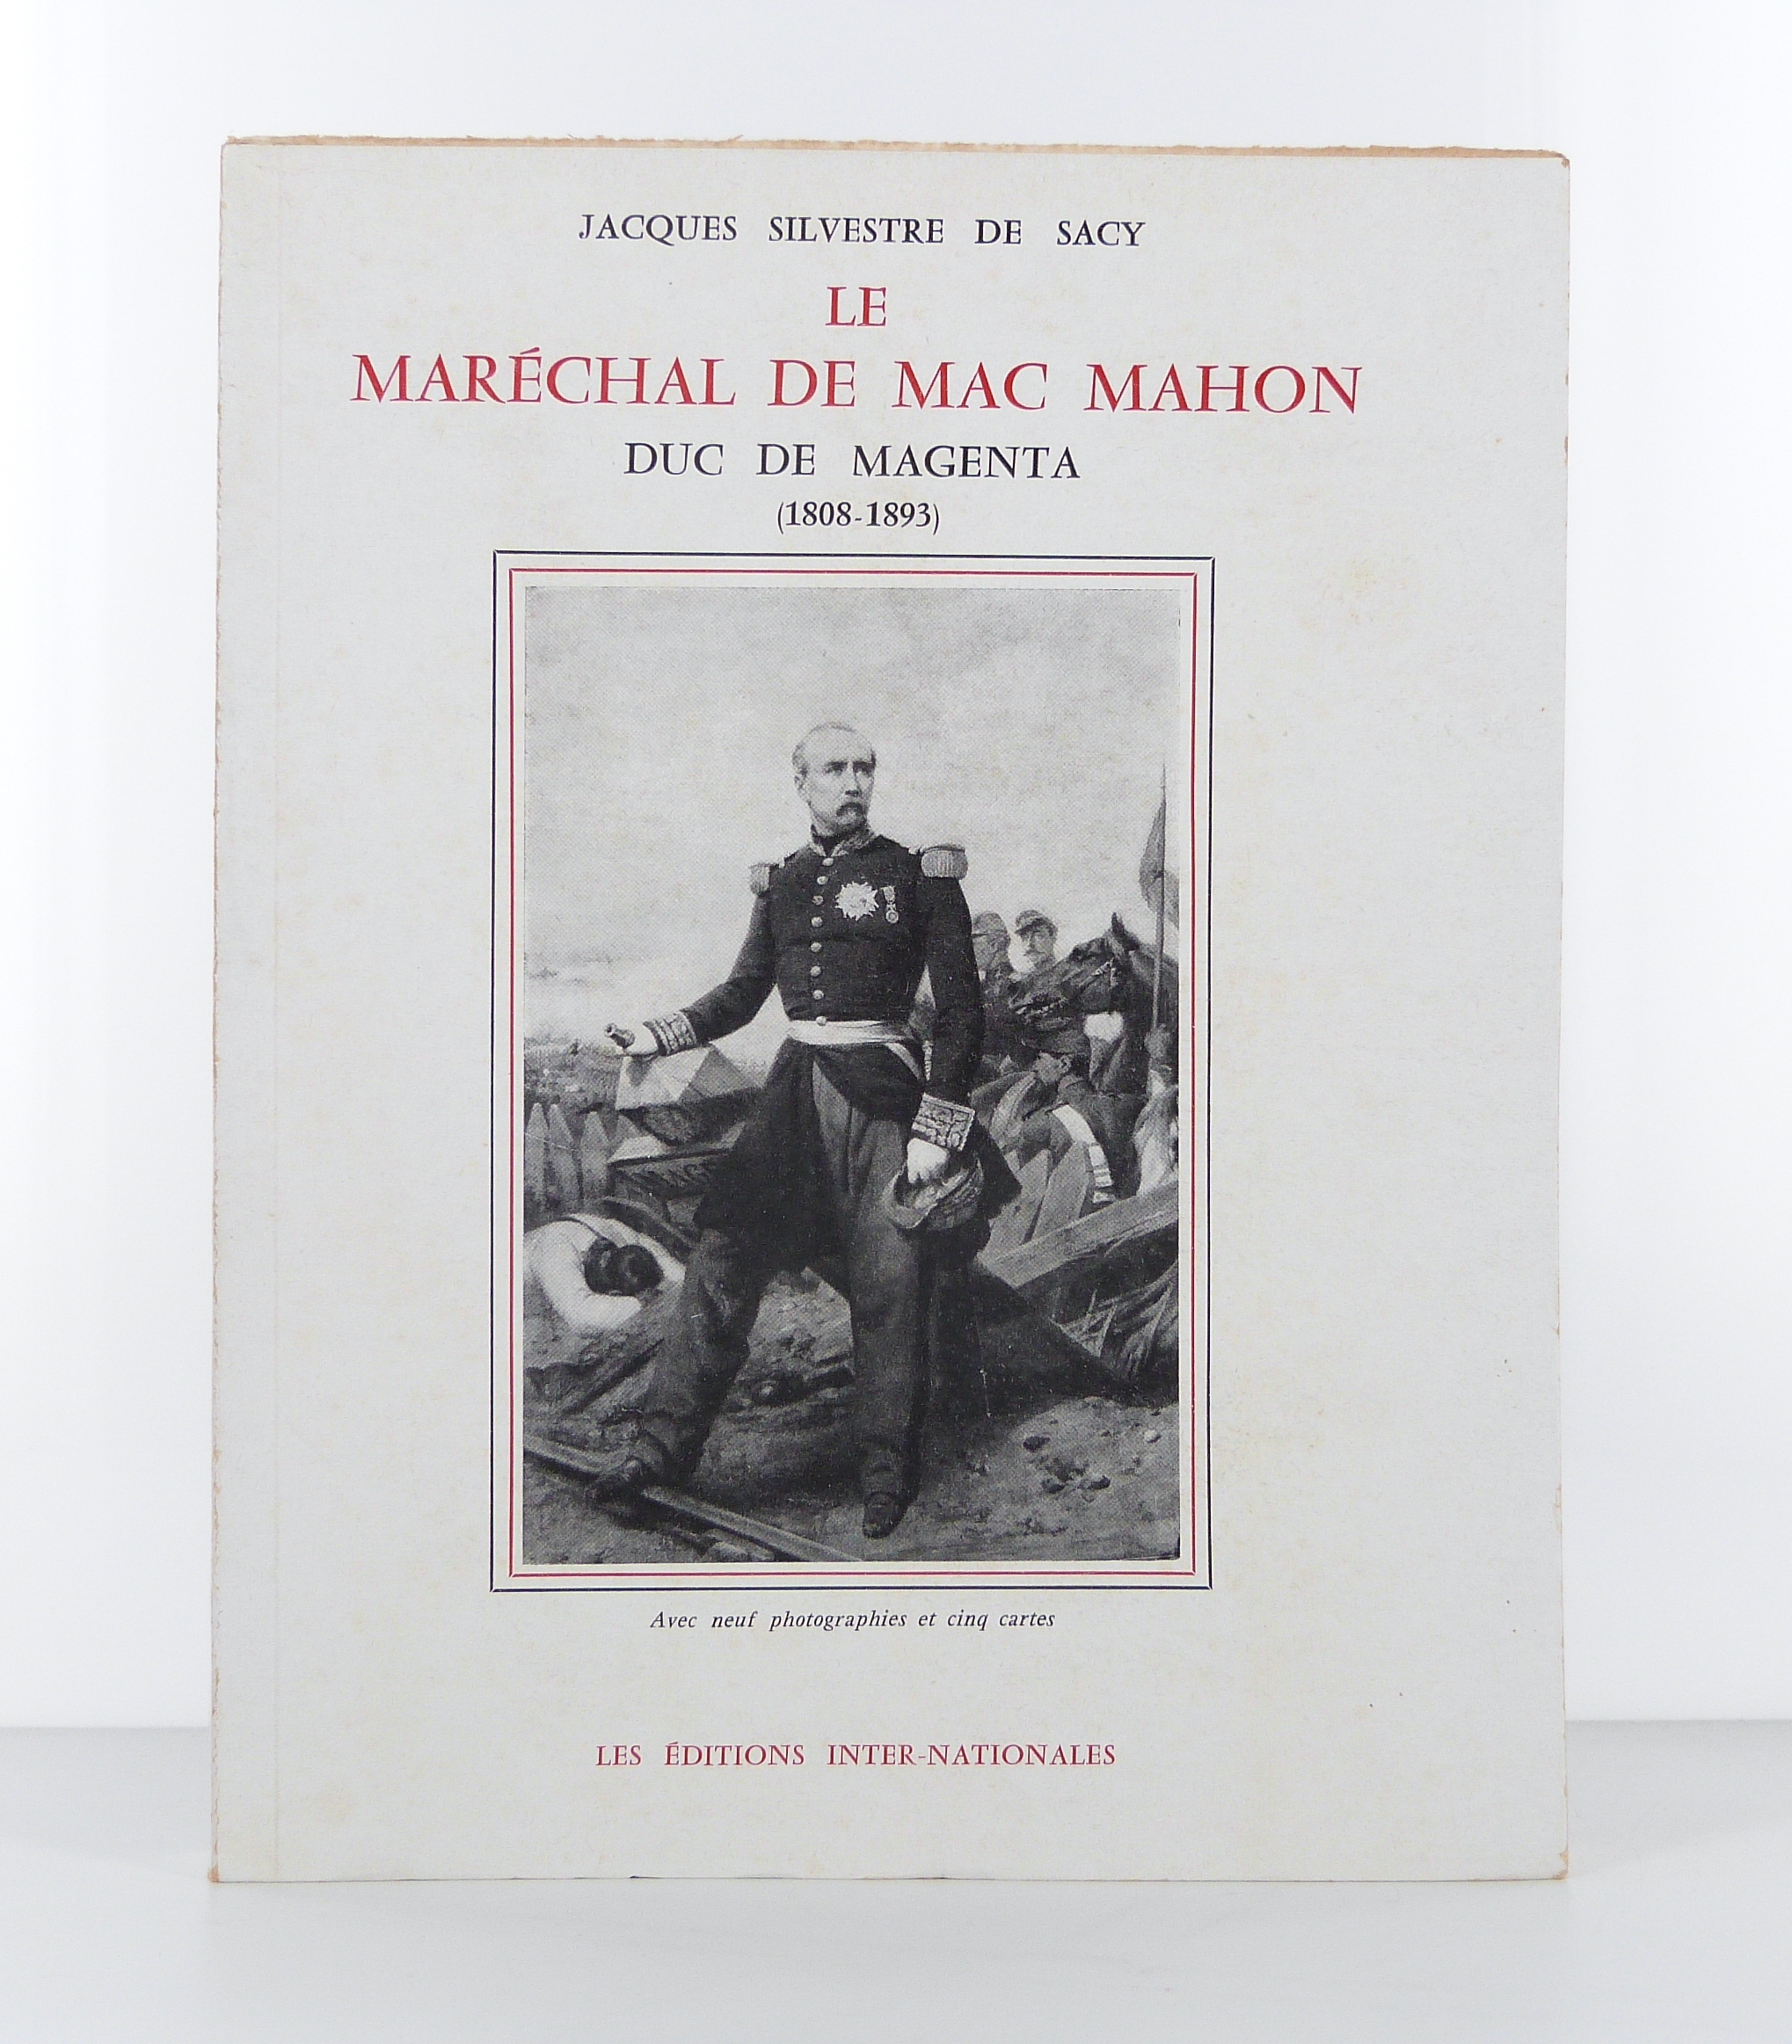 SILVESTRE DE SACY (Jacques) - Le Marchal de Mac Mahon, duc de Magenta (1808-1893) - 1960